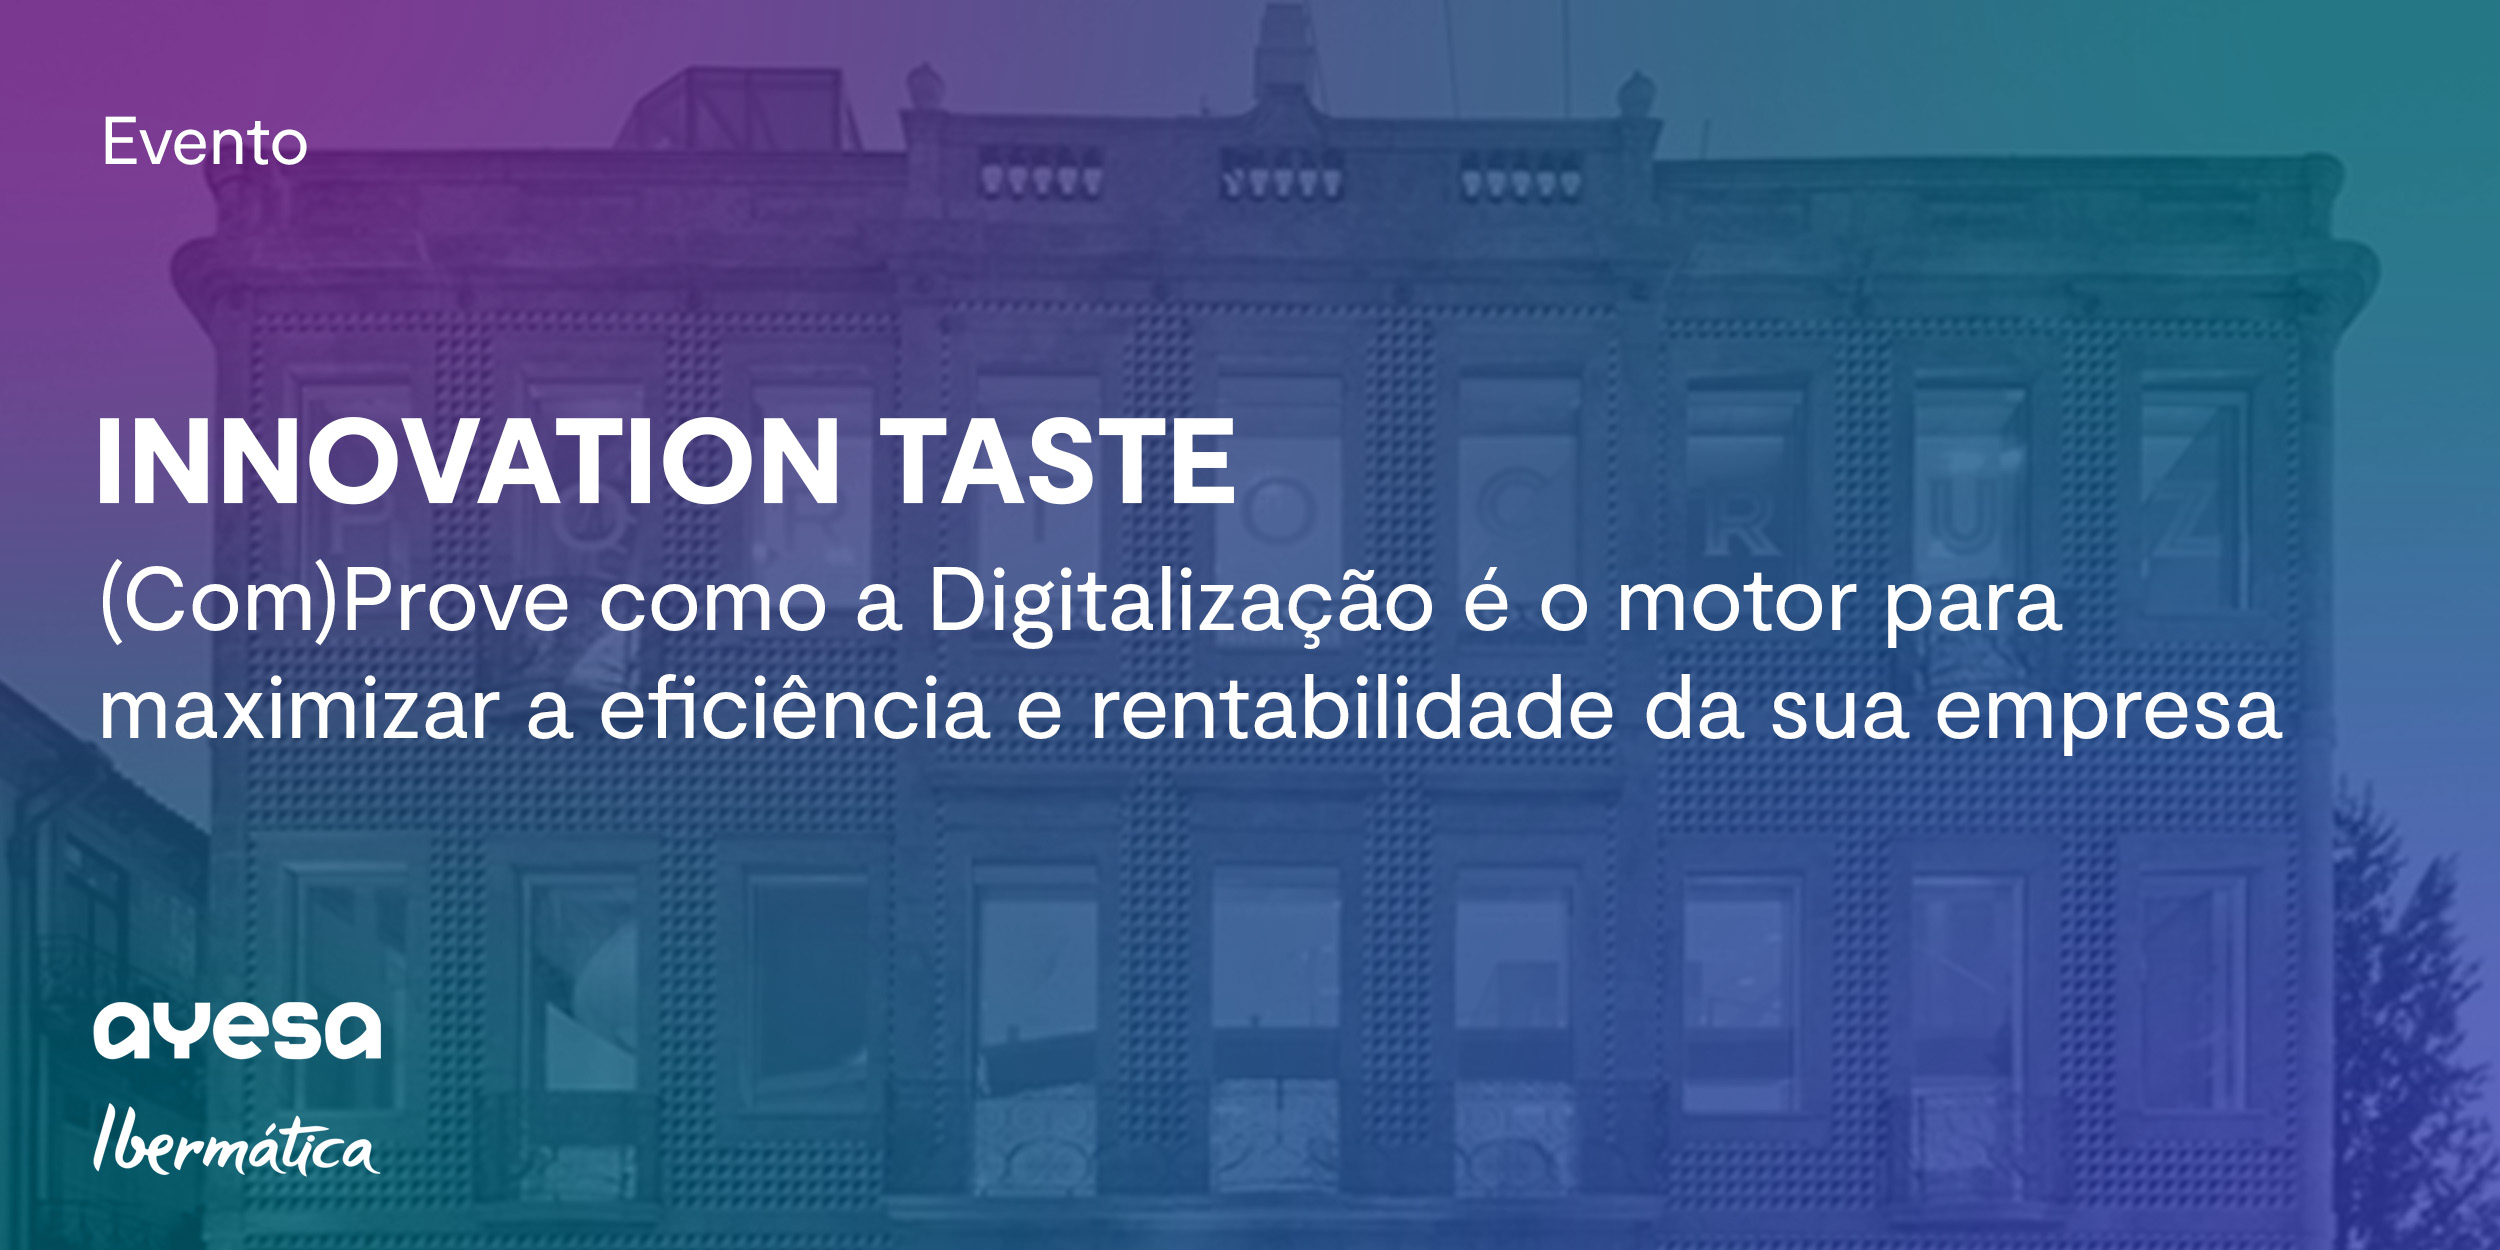 Ibermática an Ayesa company | Evento “Innovation Taste | (Com)Prove como a Digitalização é o motor para maximizar a eficiência e rentabilidade da sua empresa”